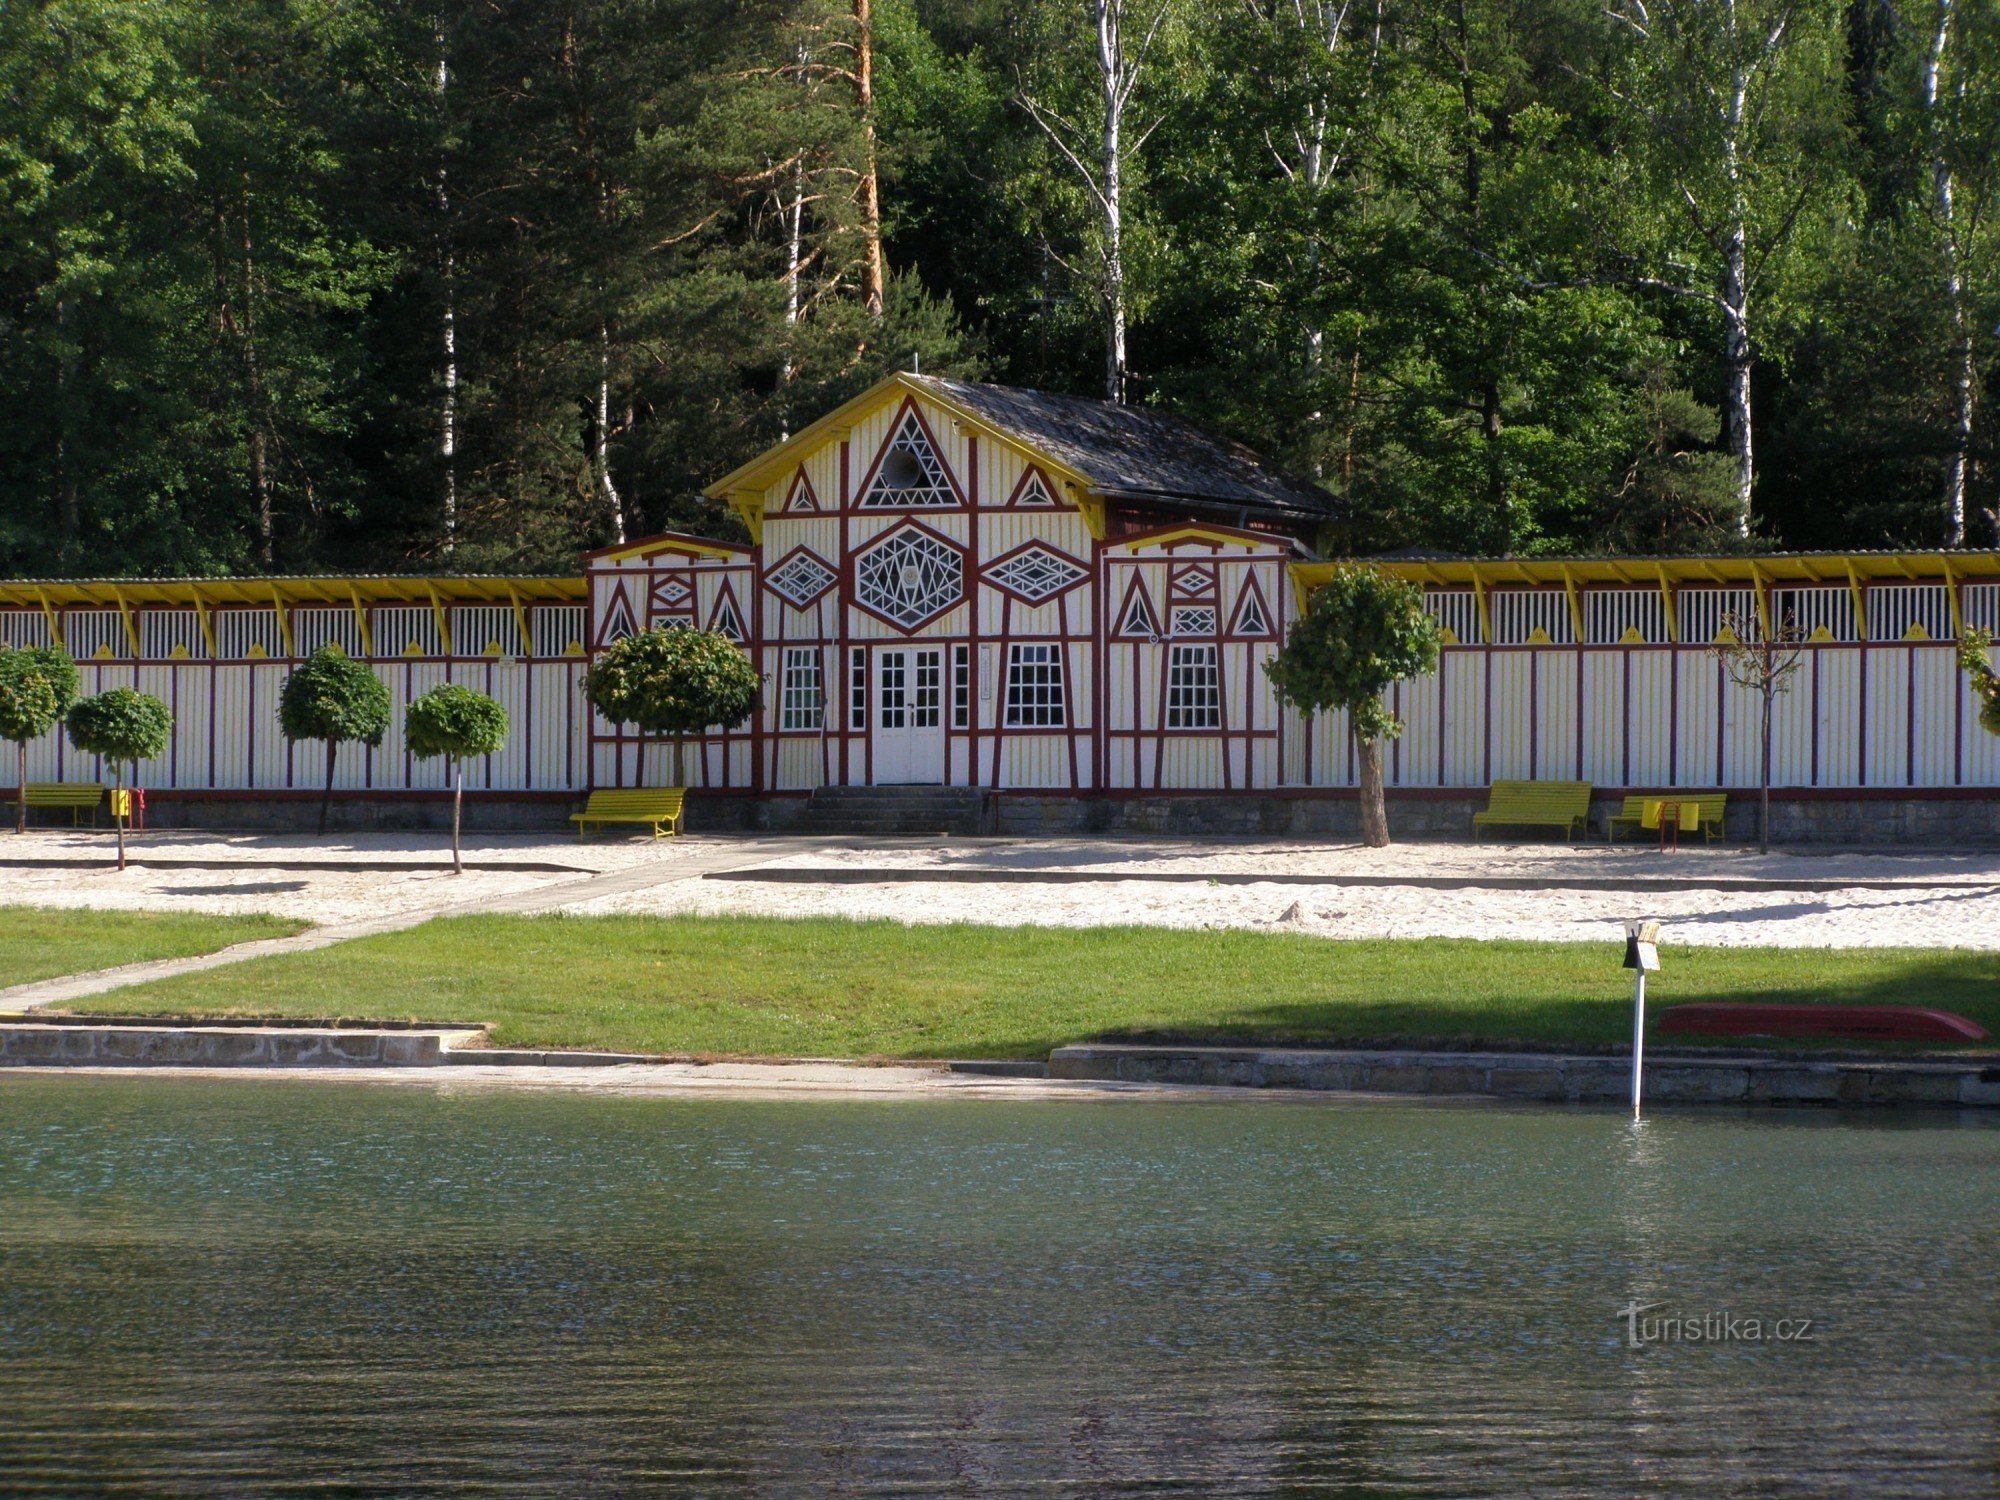 Hořice - Hồ bơi Dachova